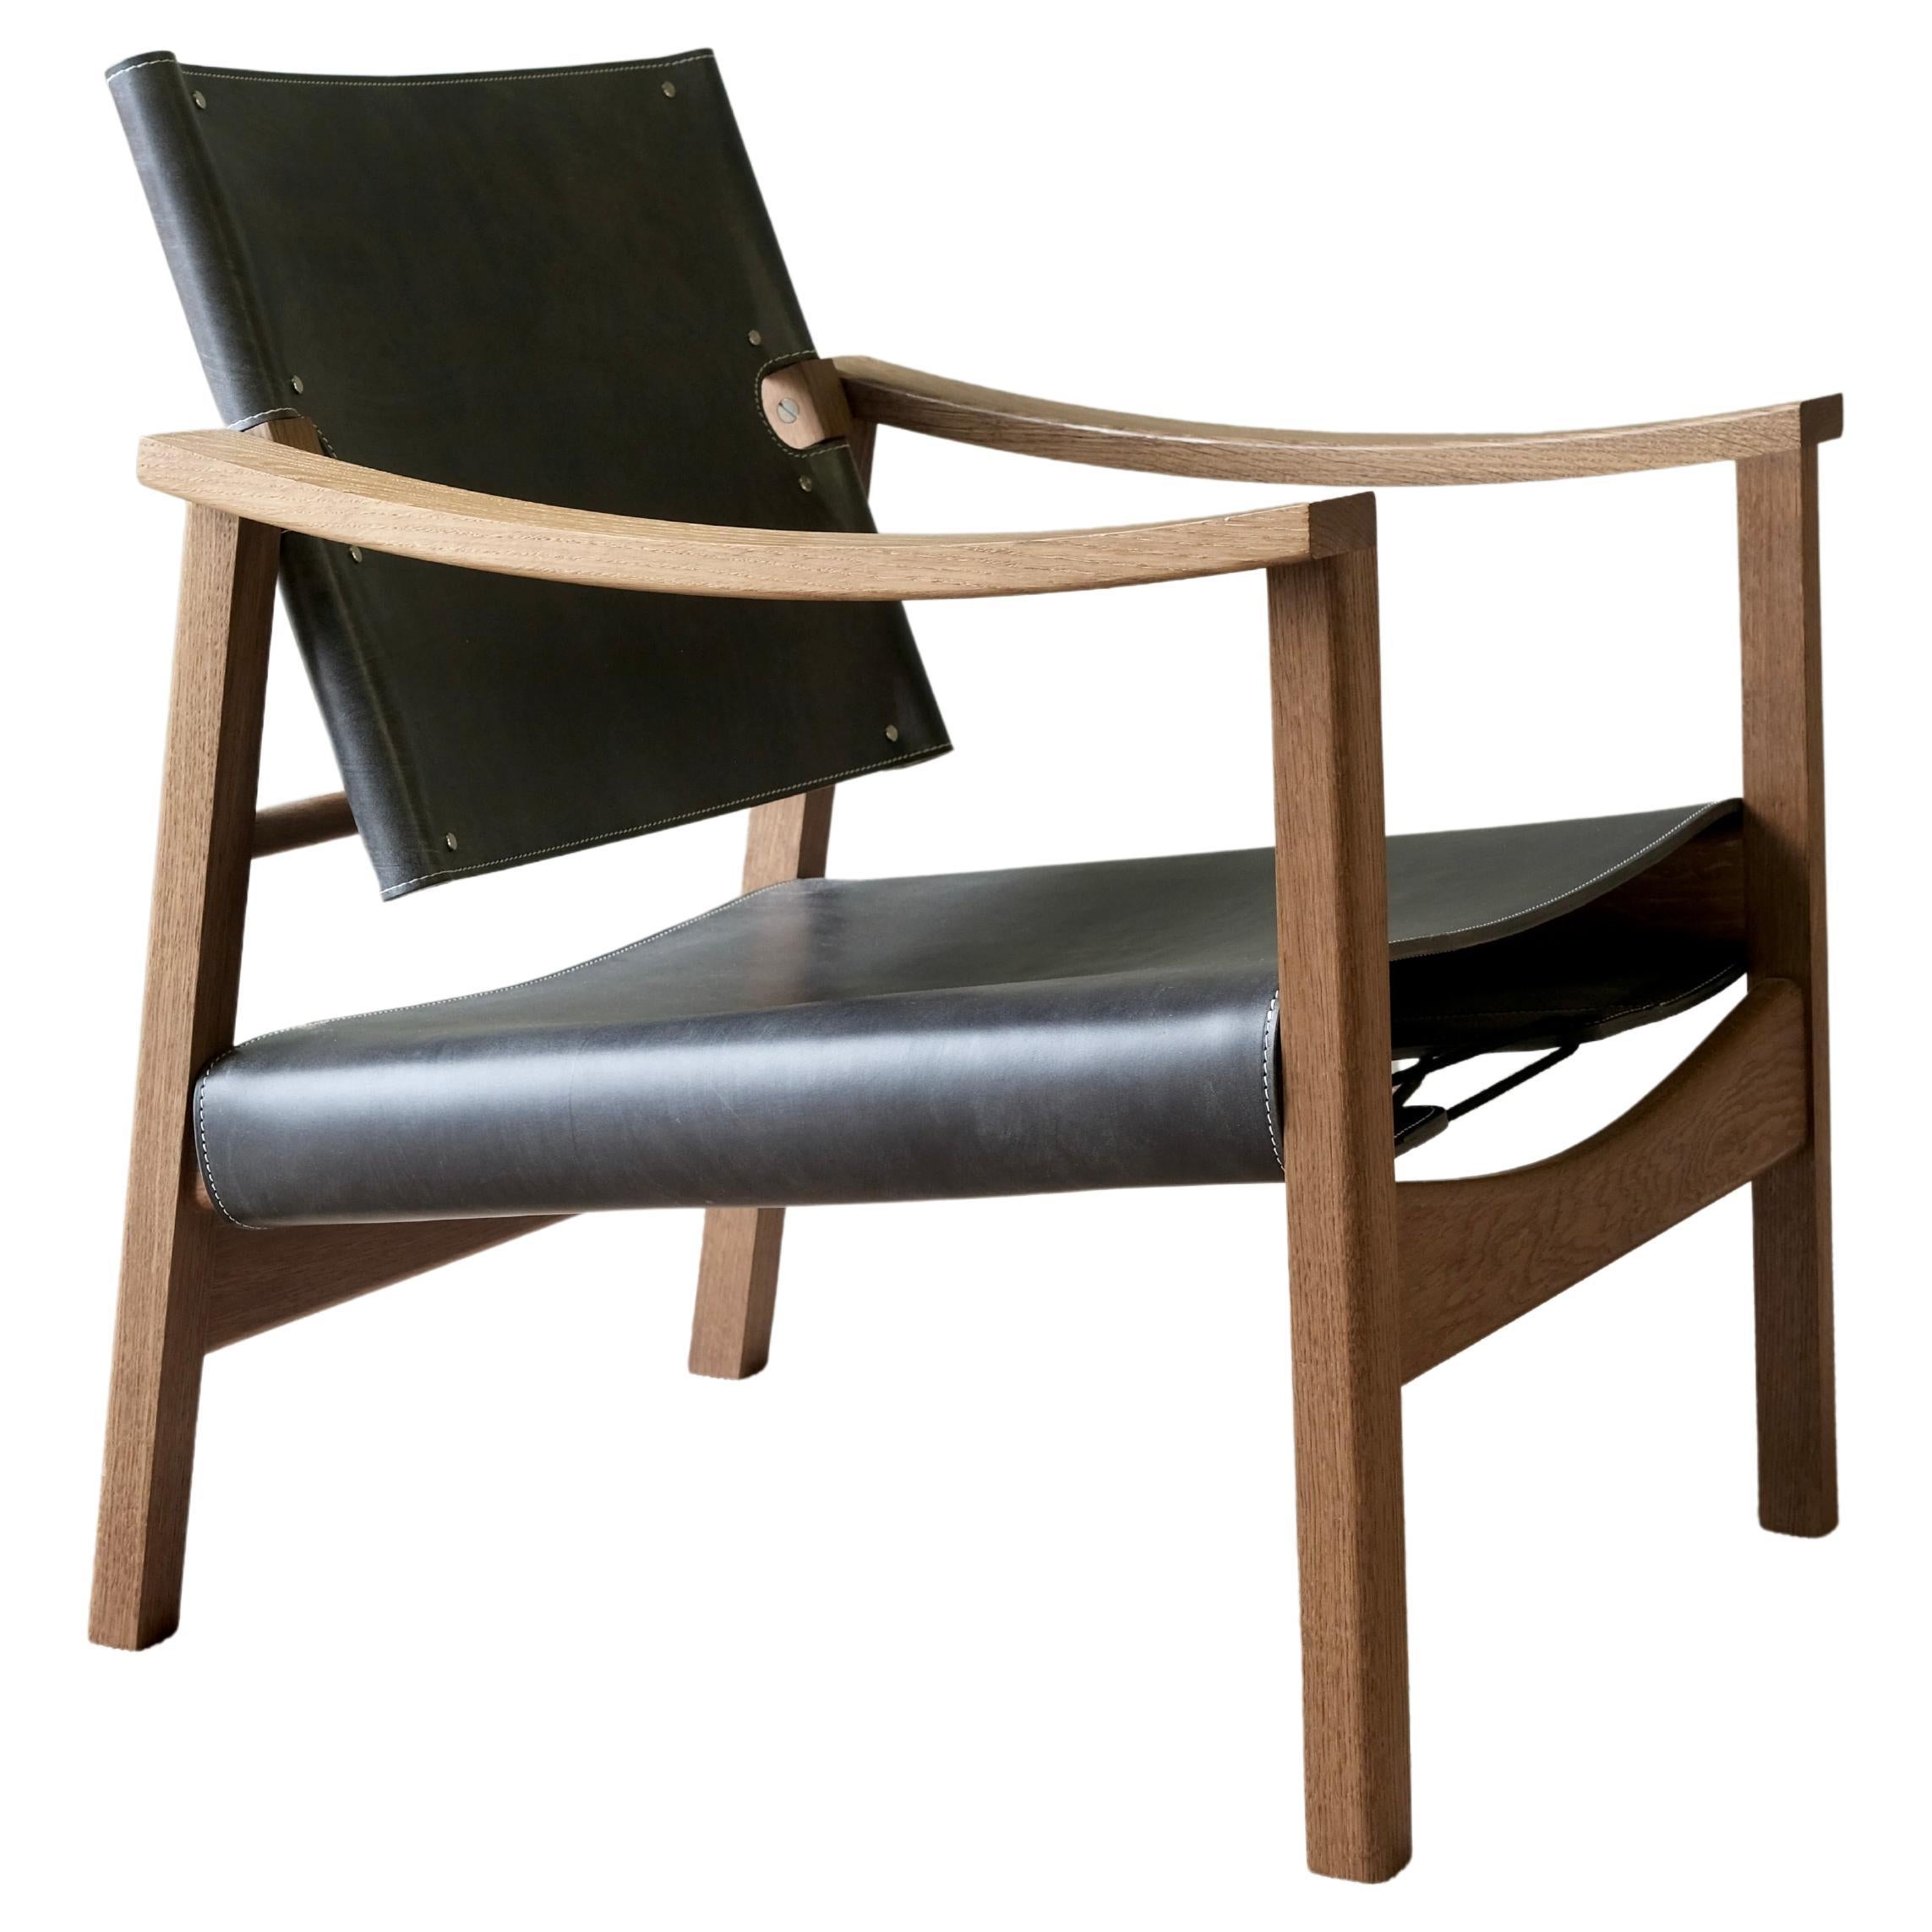 Camber Chair - Schwarzes Zaumzeugleder und geräucherte Eiche